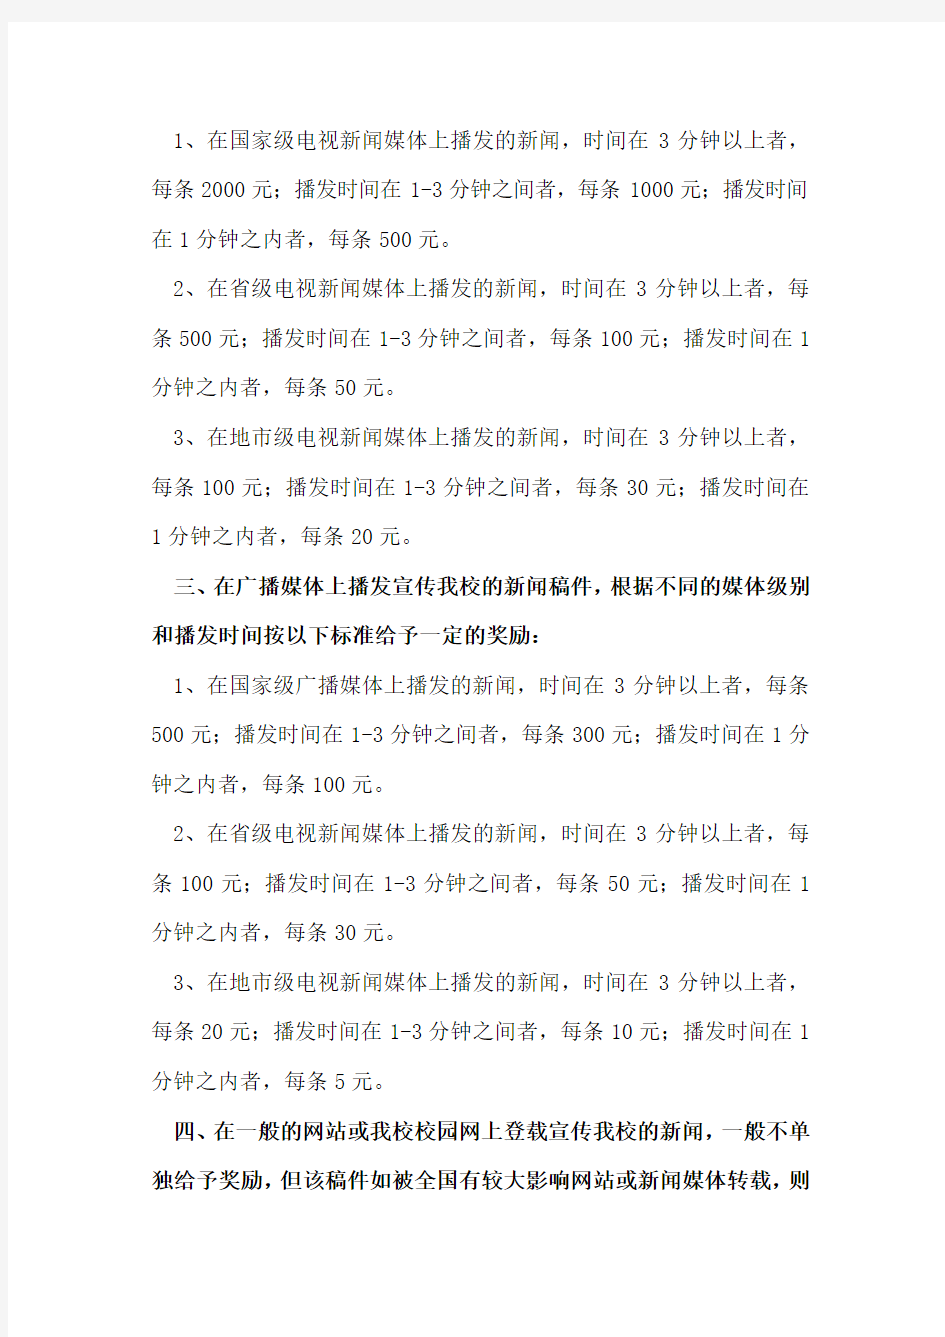 河南师范大学2009年暑假“三下乡”社会实践宣传工作奖励方法